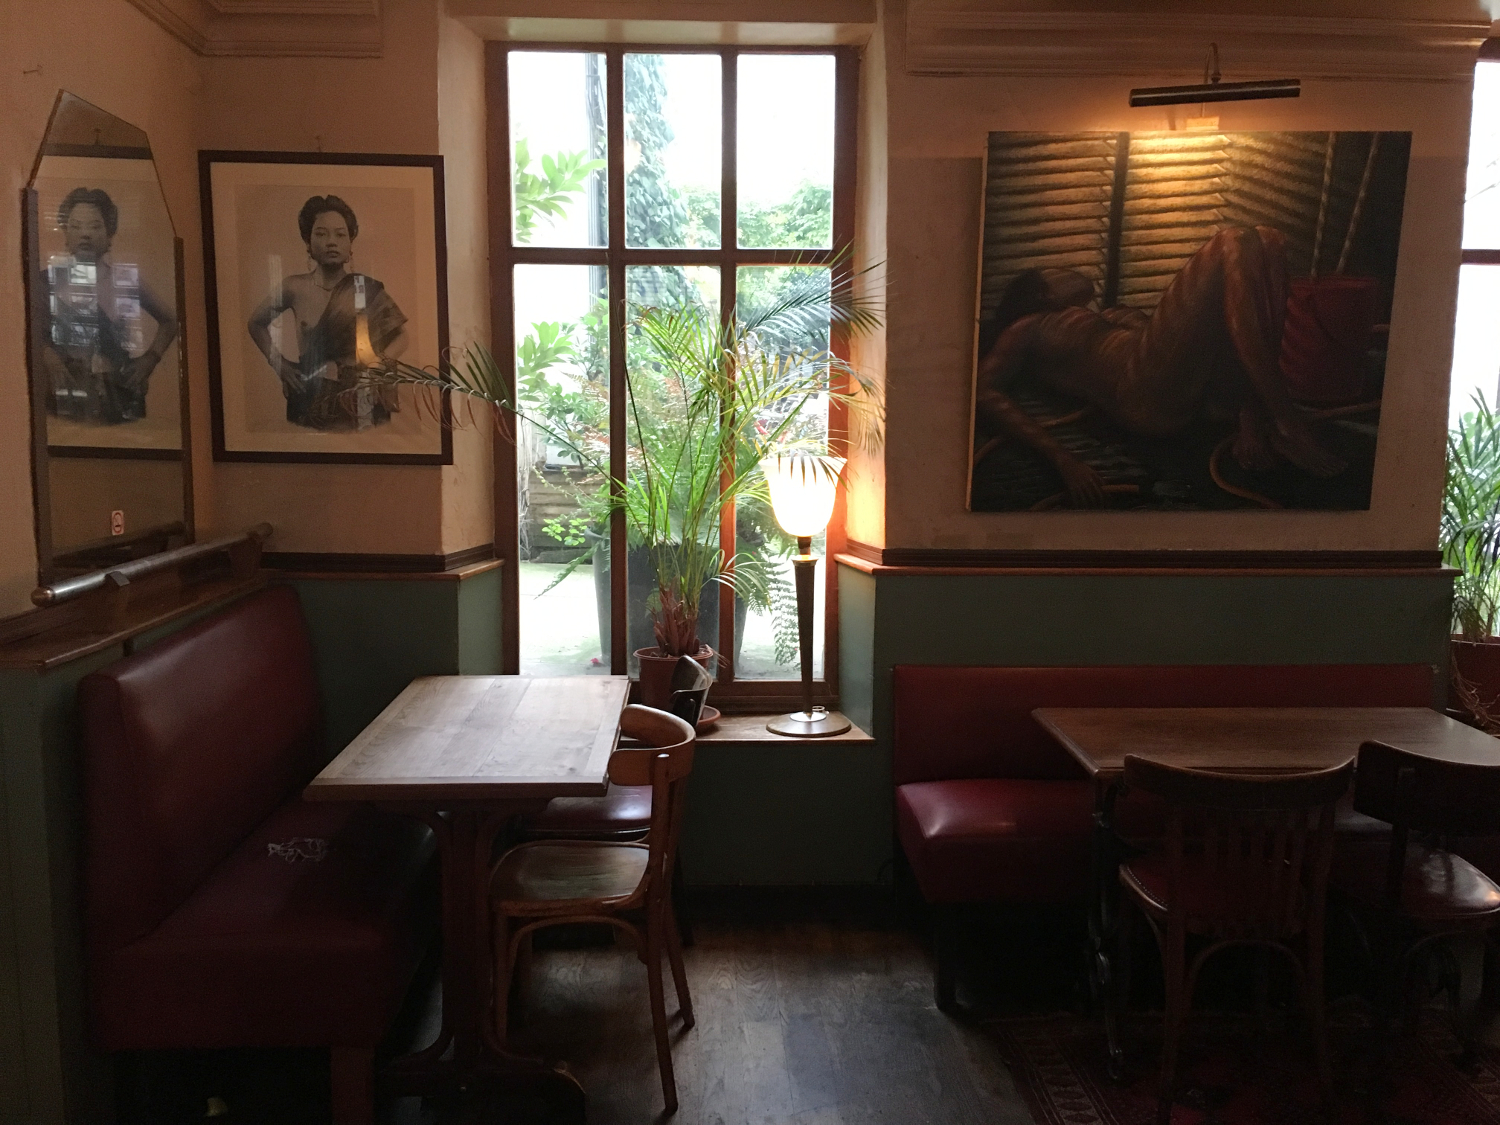 rocaille-blog-paris-cafe-de-lindustrie-restaurant-where-to-eat-3